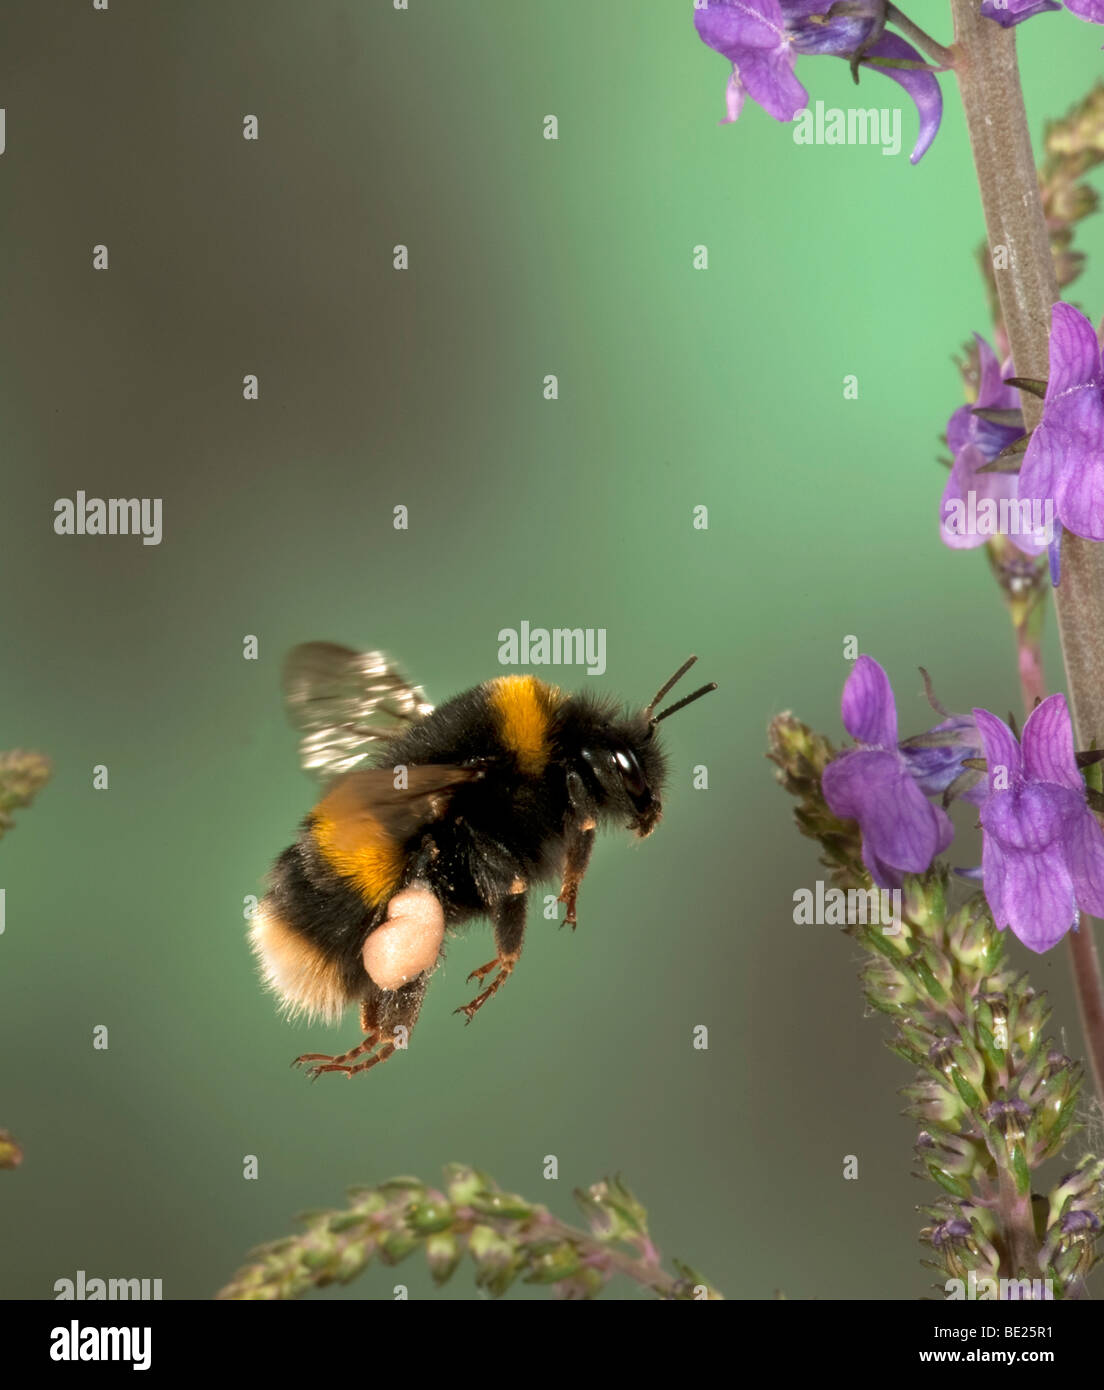 Cerf chamois bourdon Bombus terrestris voler à travers la collecte du pollen des fleurs technique photographique à grande vitesse Banque D'Images